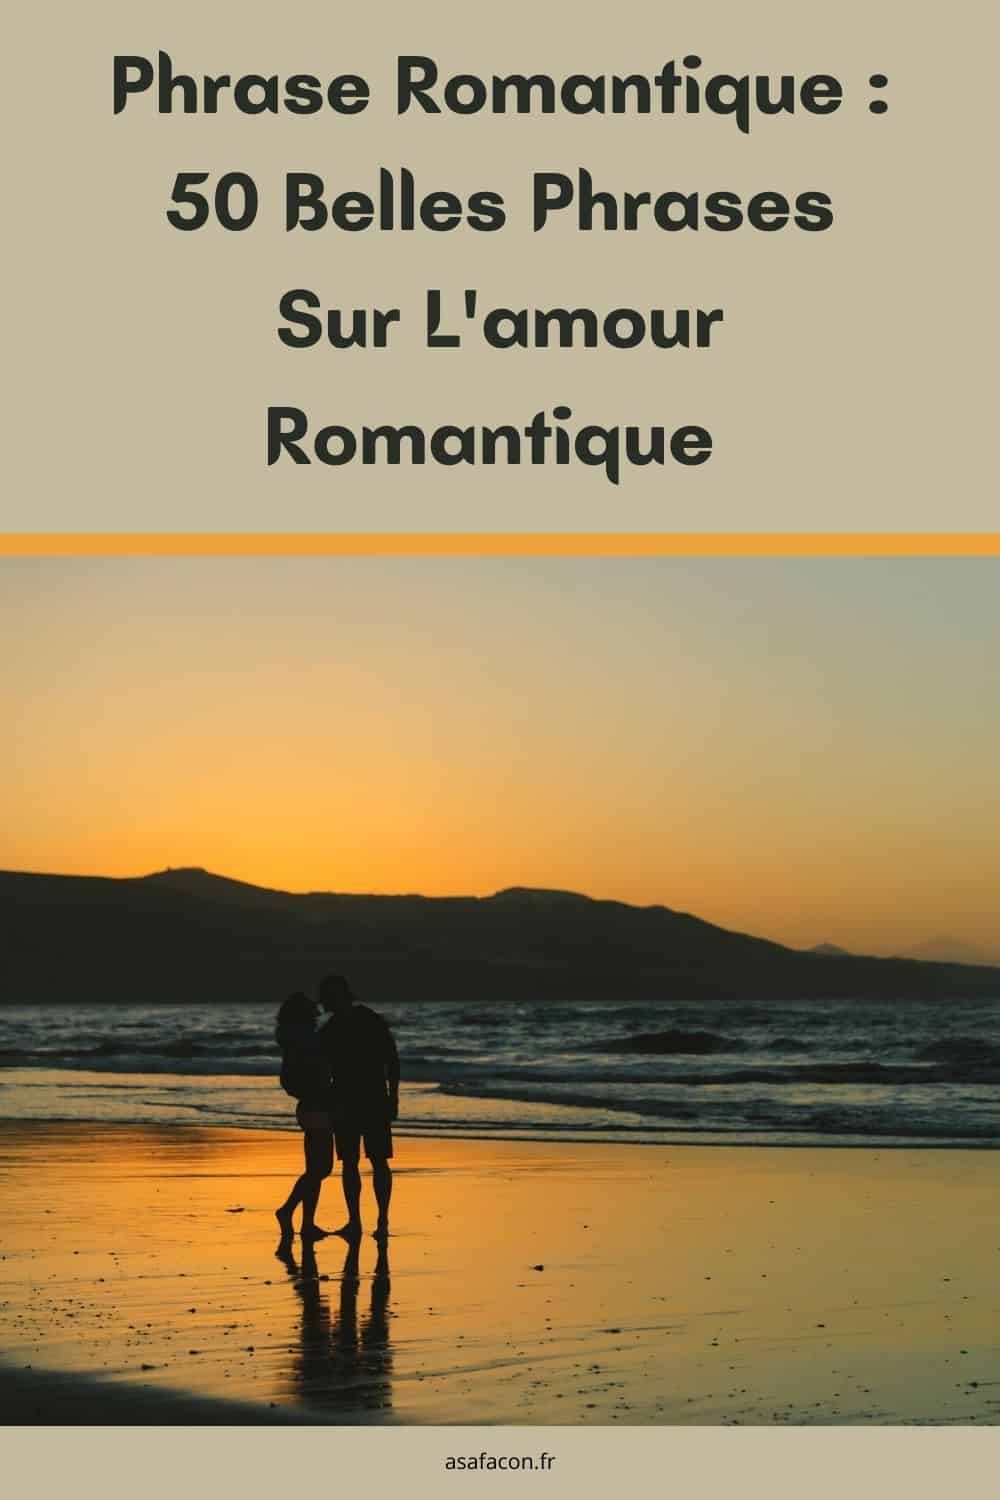 Phrase Romantique : 50 Belles Phrases Sur L'amour Romantique